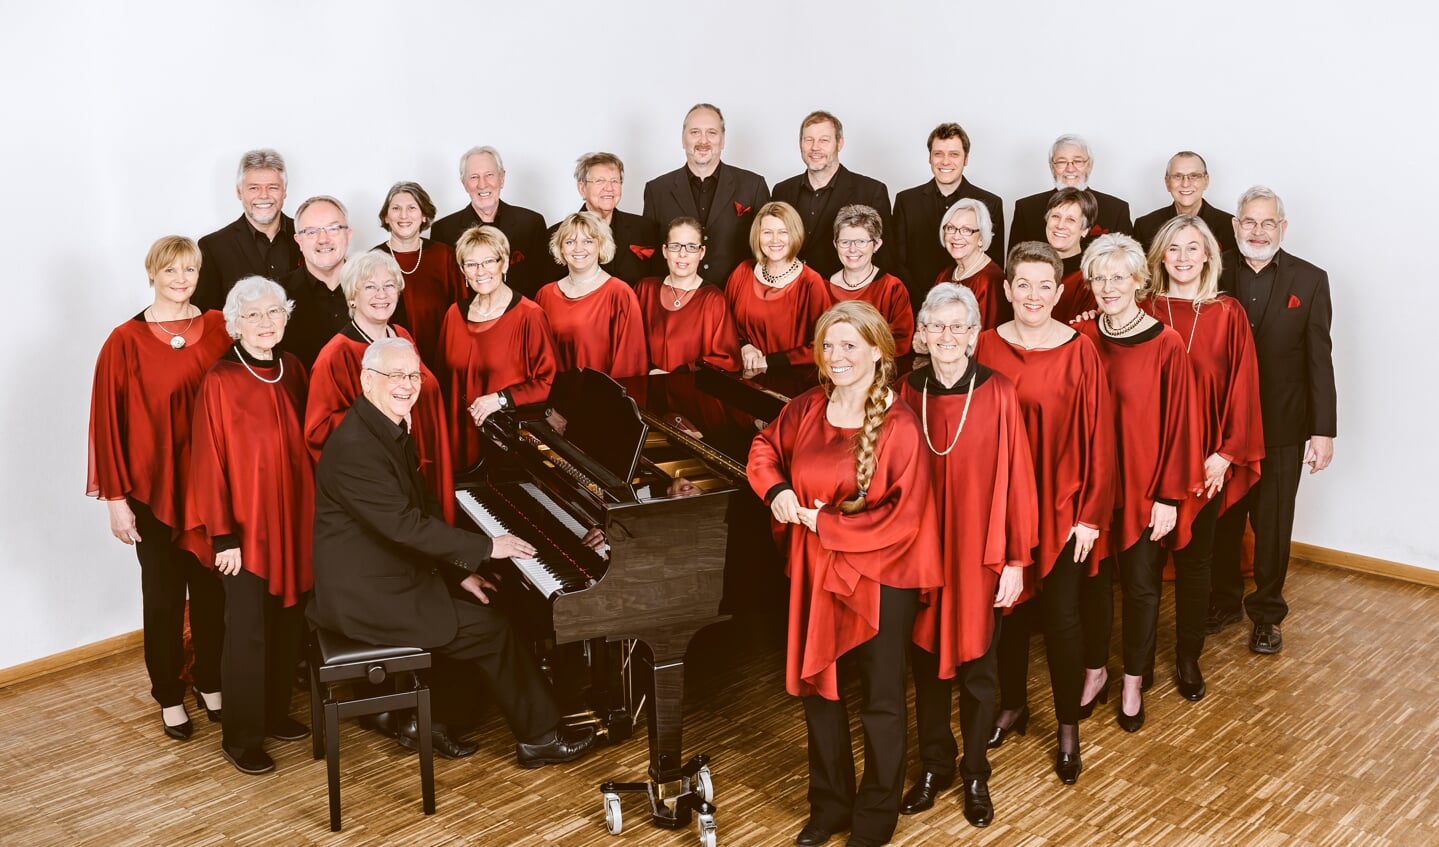 Der Nordland-Kammerchor gilt als musikalische Gemeinschaft mit hohem Niveau. Er hat 27 Mitglieder und feierte 2021 sein 25-jähriges Bestehen. Foto: